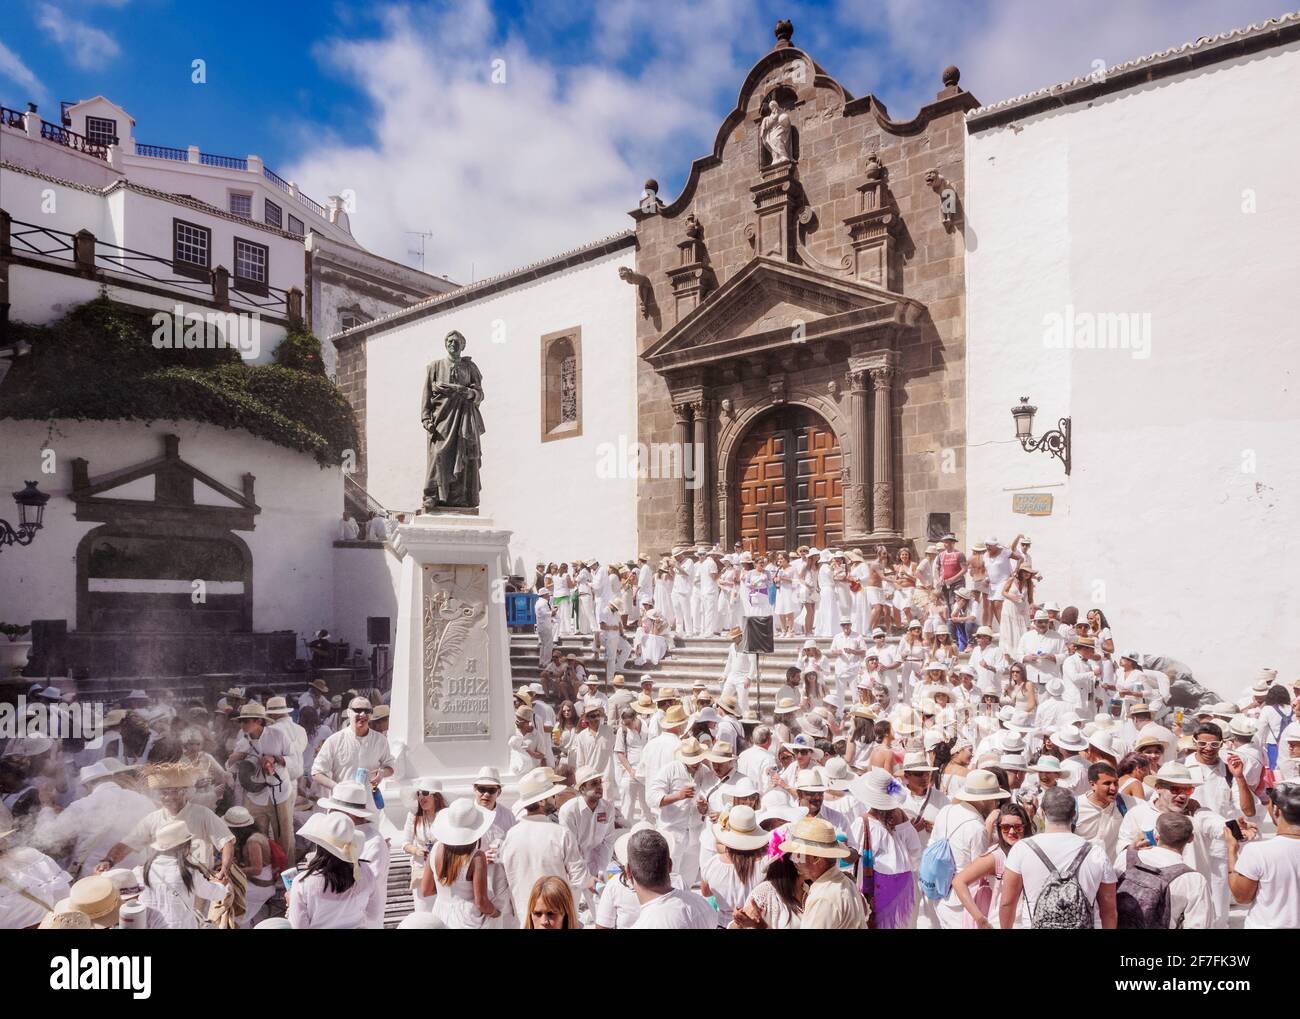 Los Indianos Carnival Party at Plaza de Espana in front of the El Salvador Church, Santa Cruz de La Palma, Canary Islands, Spain, Europe Stock Photo